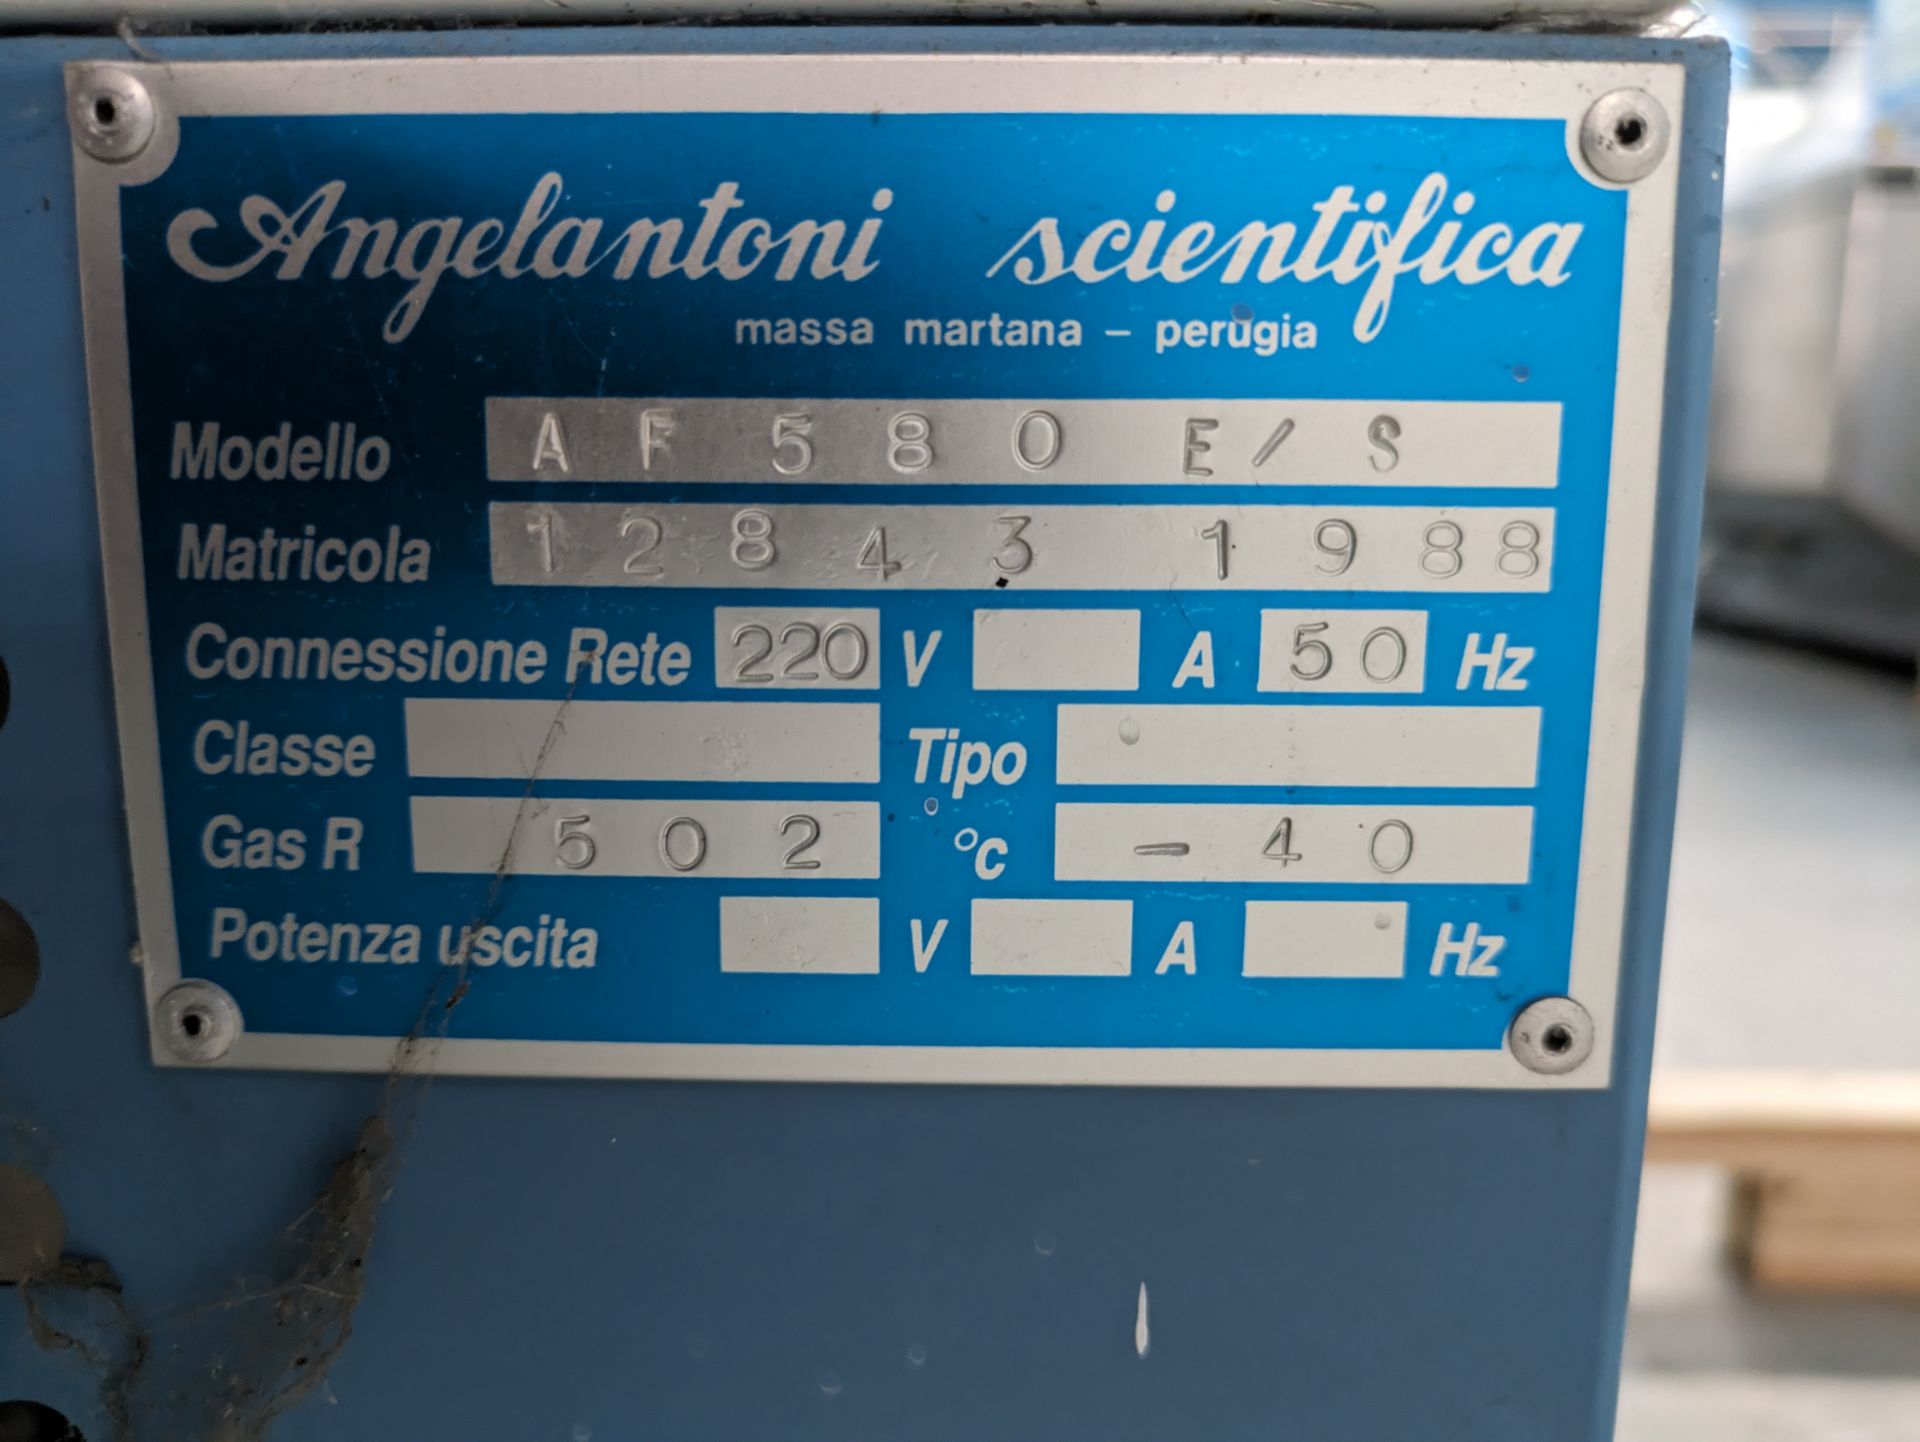 Angelantoni AF58 Lab Fridge - Model AF580 E/S - Year 1988 - Image 3 of 3